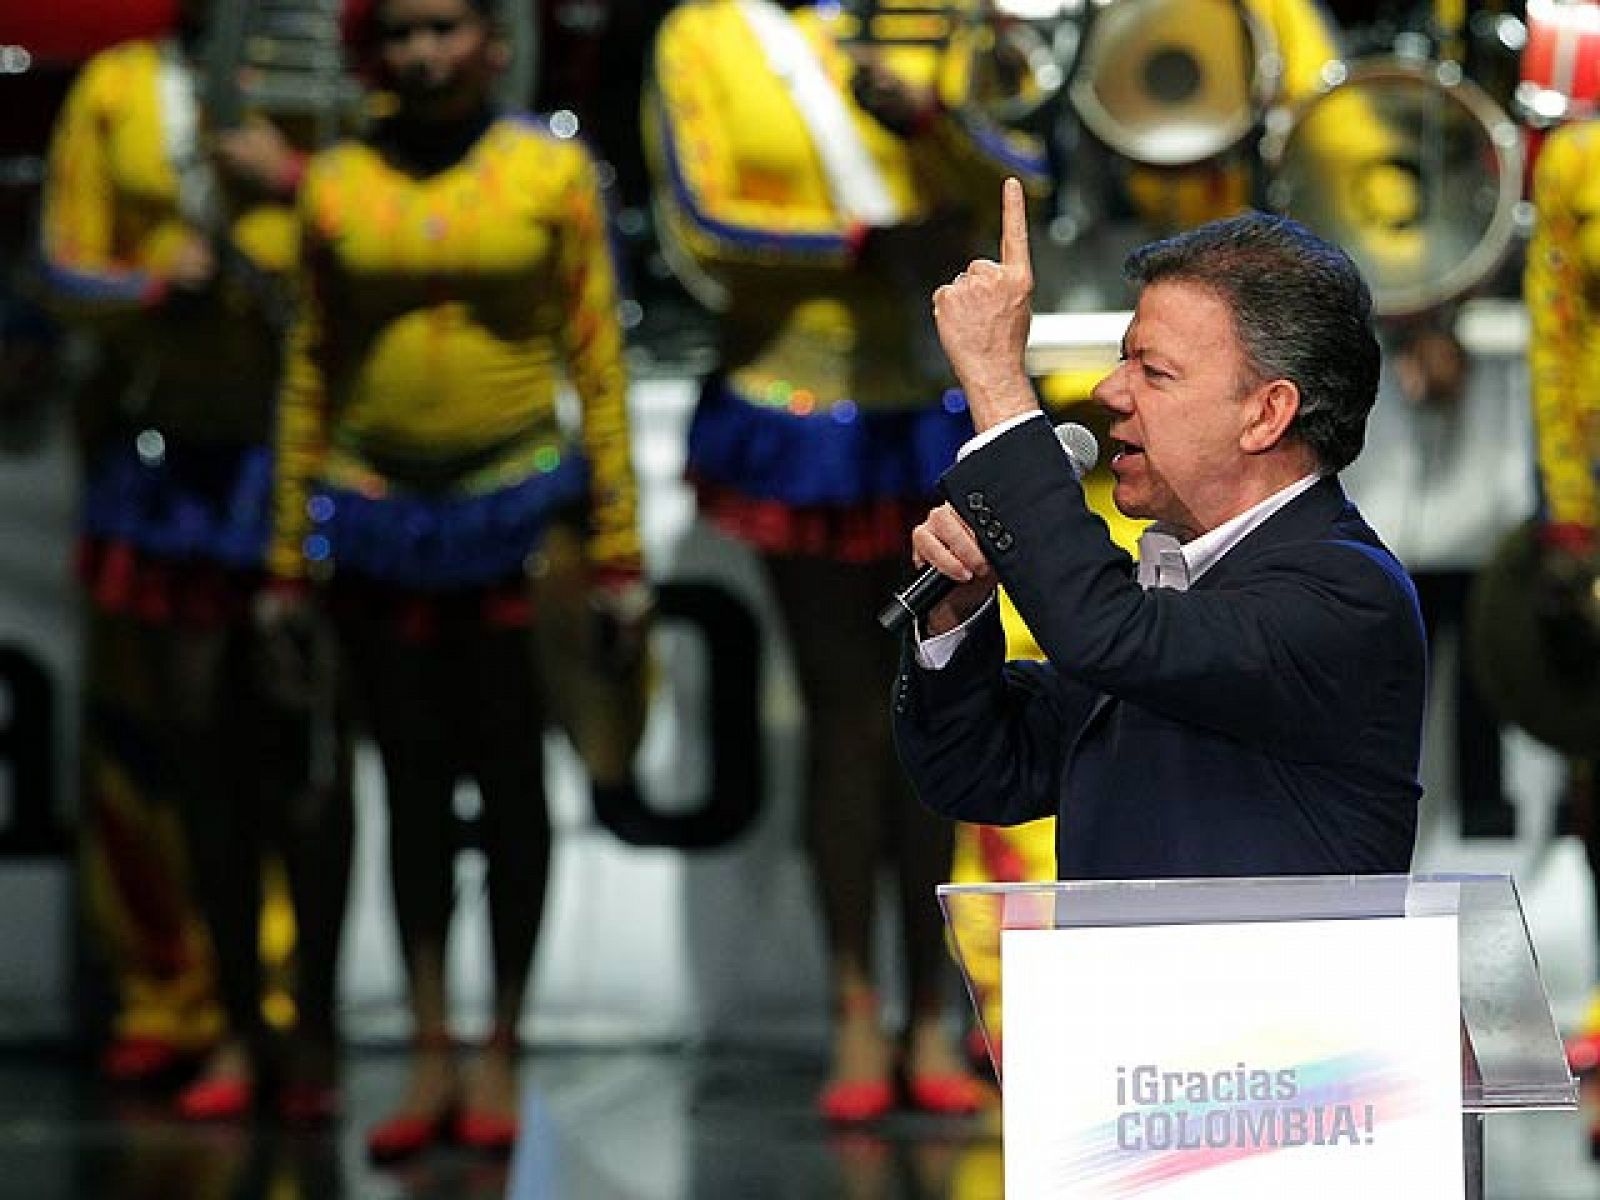 El conservador Juan Manuel Santos ha sido elegido presidente de Colombia con el 69% de los votos en la segunda vuelta. El ex ministro de Defensa se convierte así en presidente electo y sucederá a su compañero Álvaro Uribe.